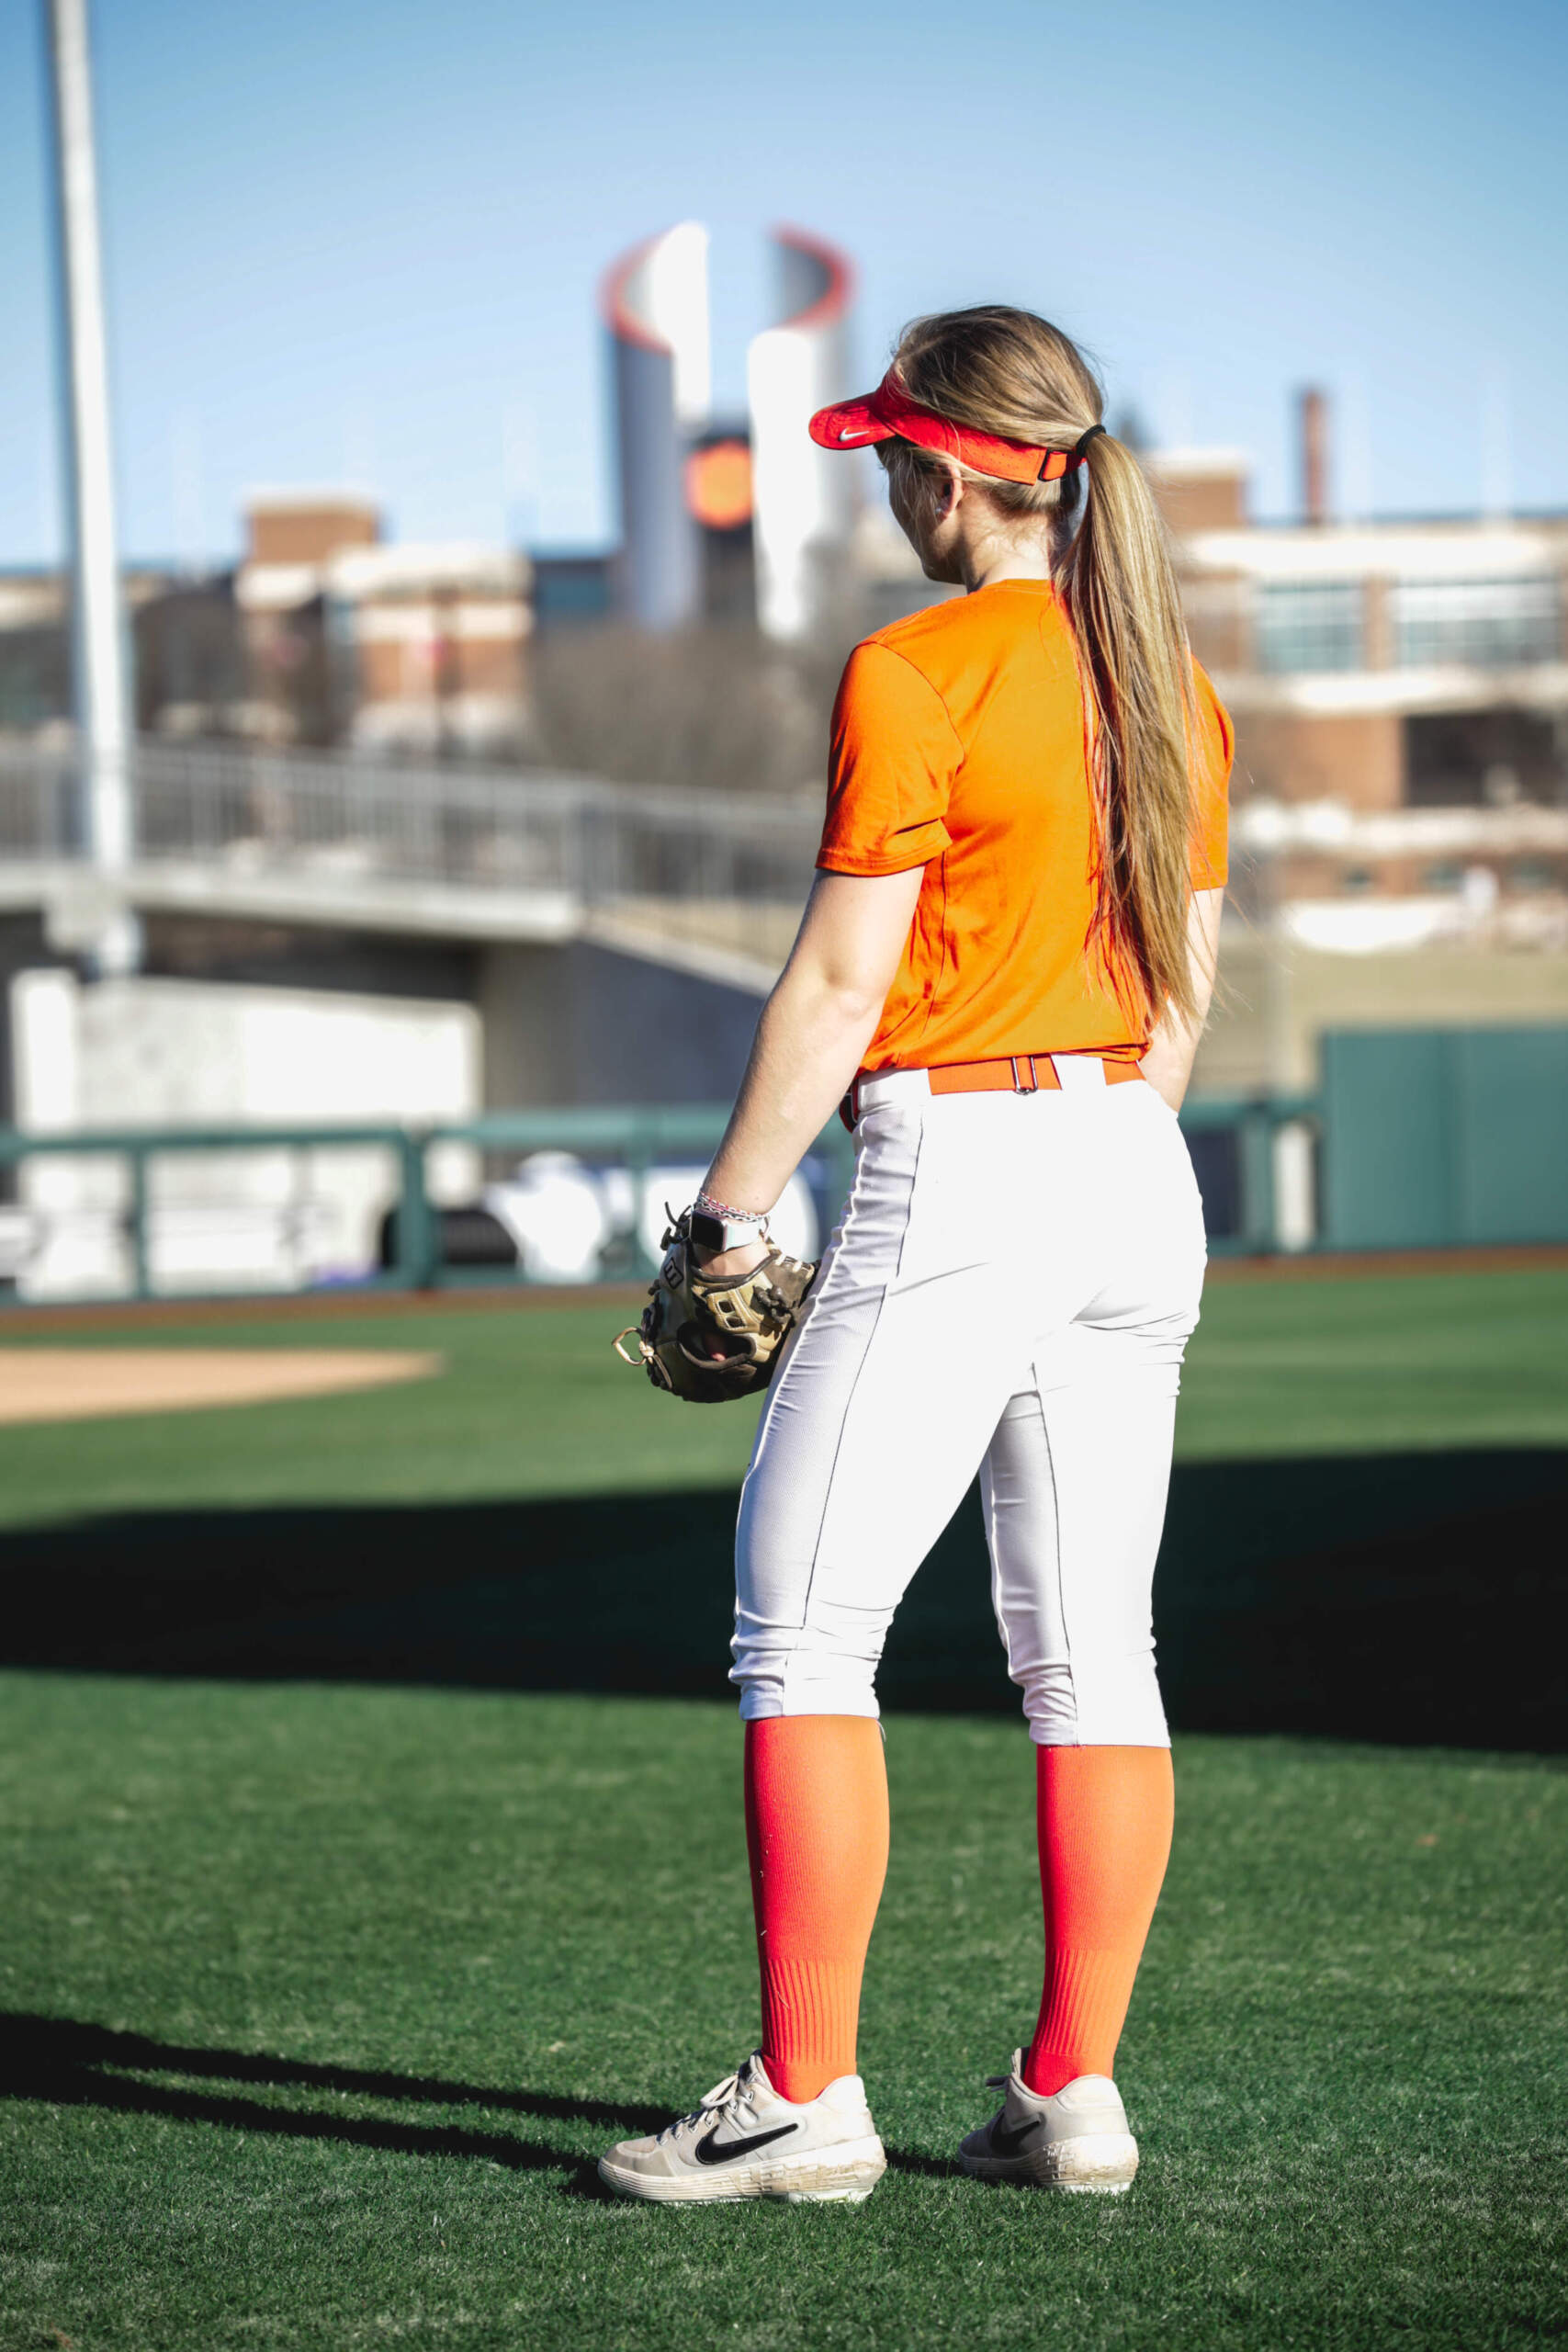 clemson baseball uniforms 2020